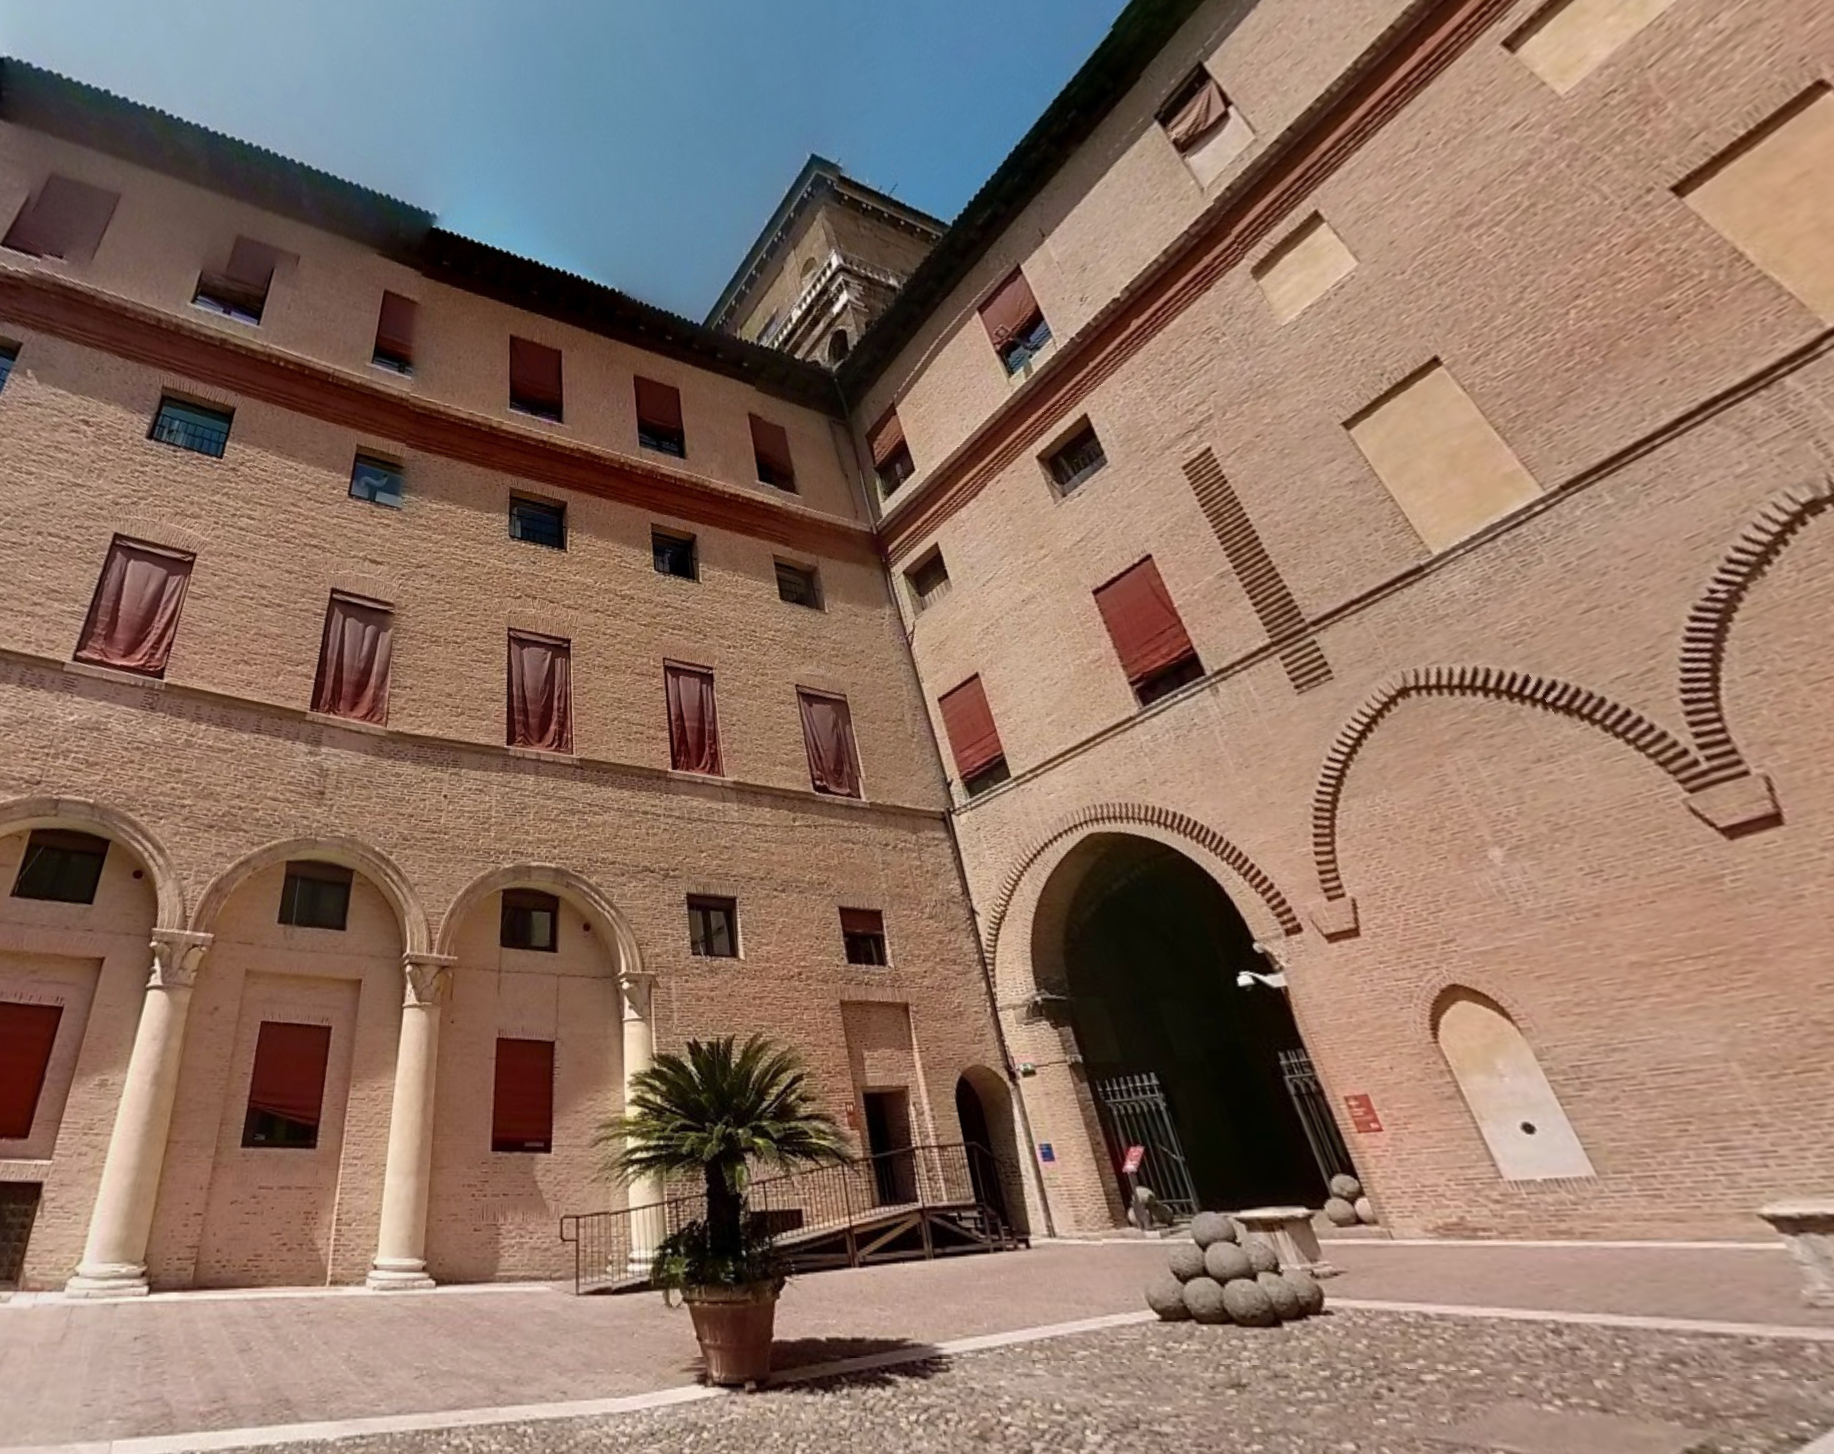 The Estense Castle's Secret Passages by Google Earth